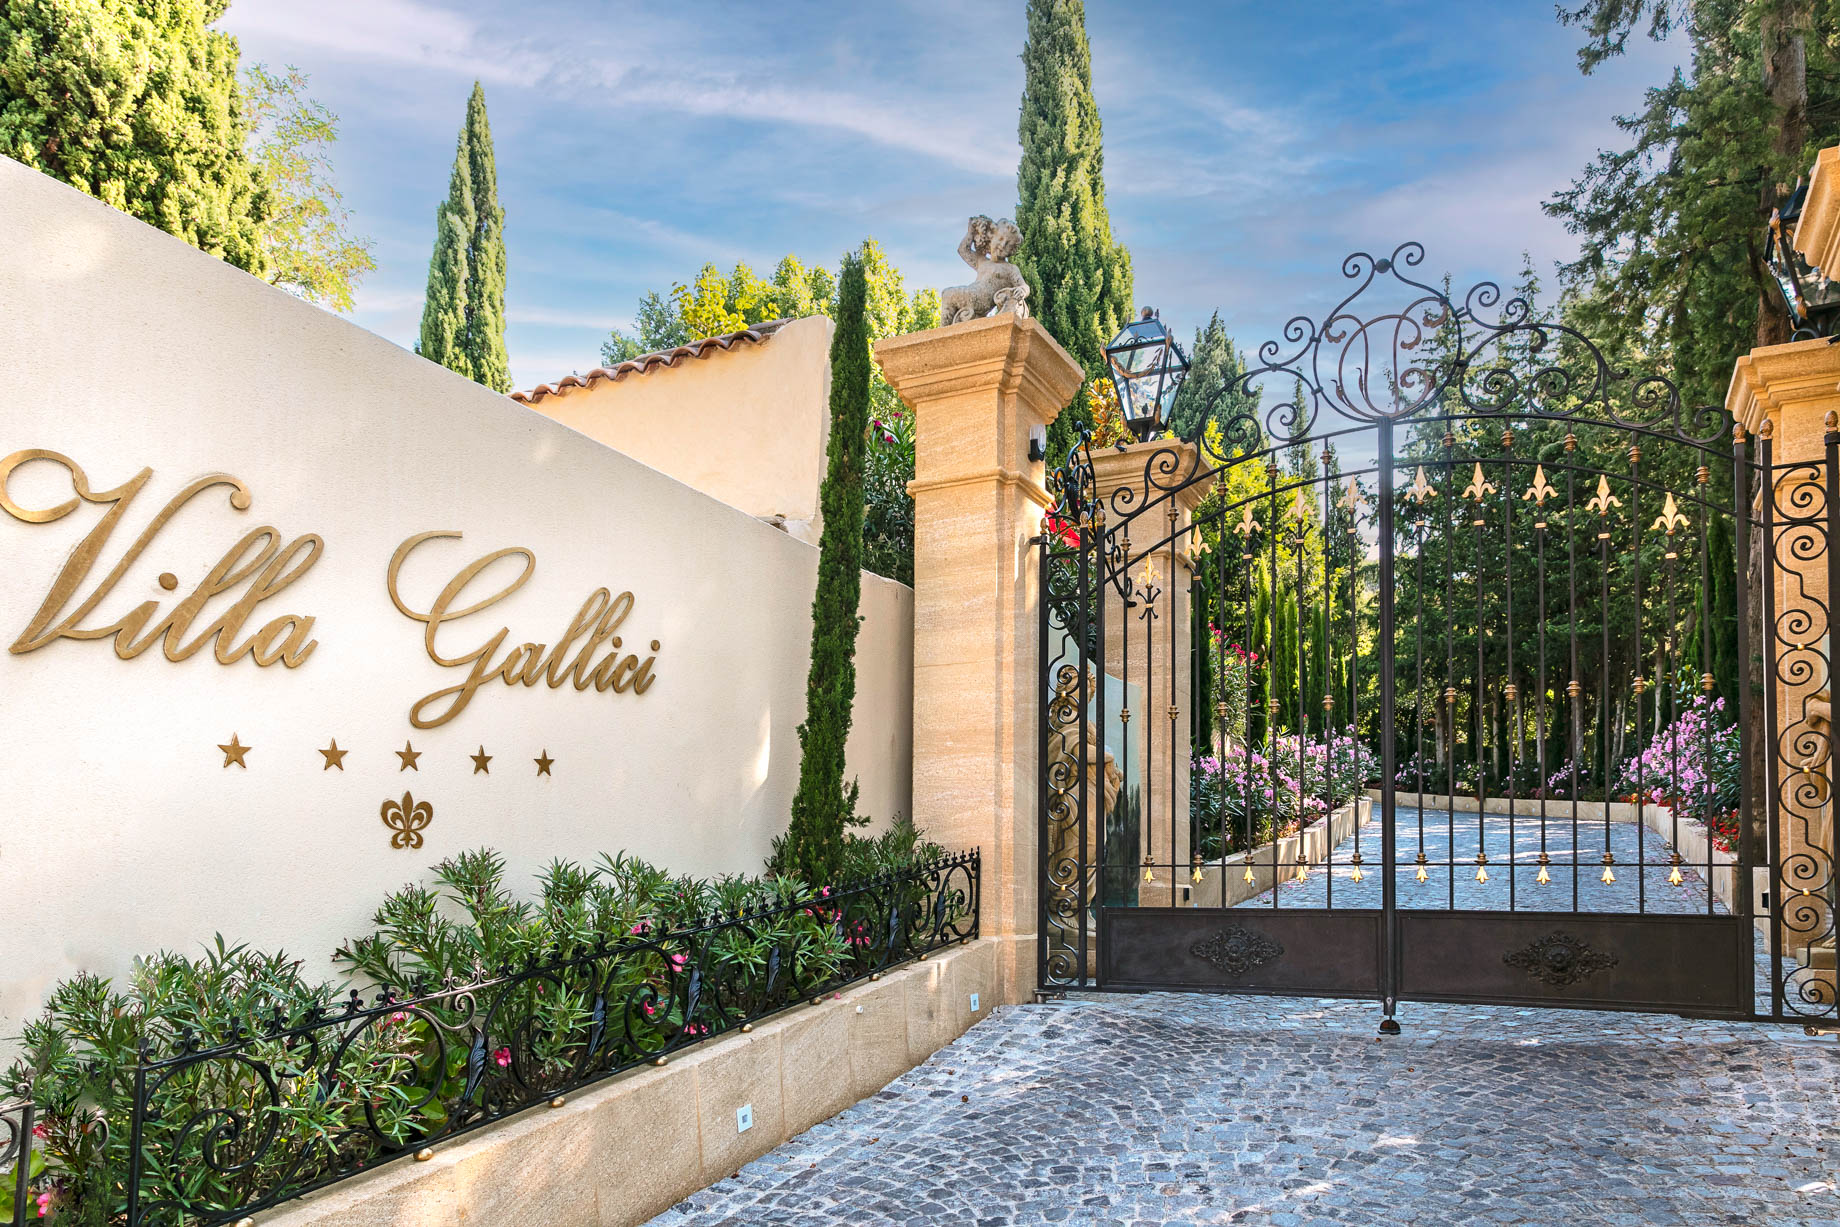 Villa Gallici Relais Châteaux Hotel – Aix-en-Provence, France – Entrance